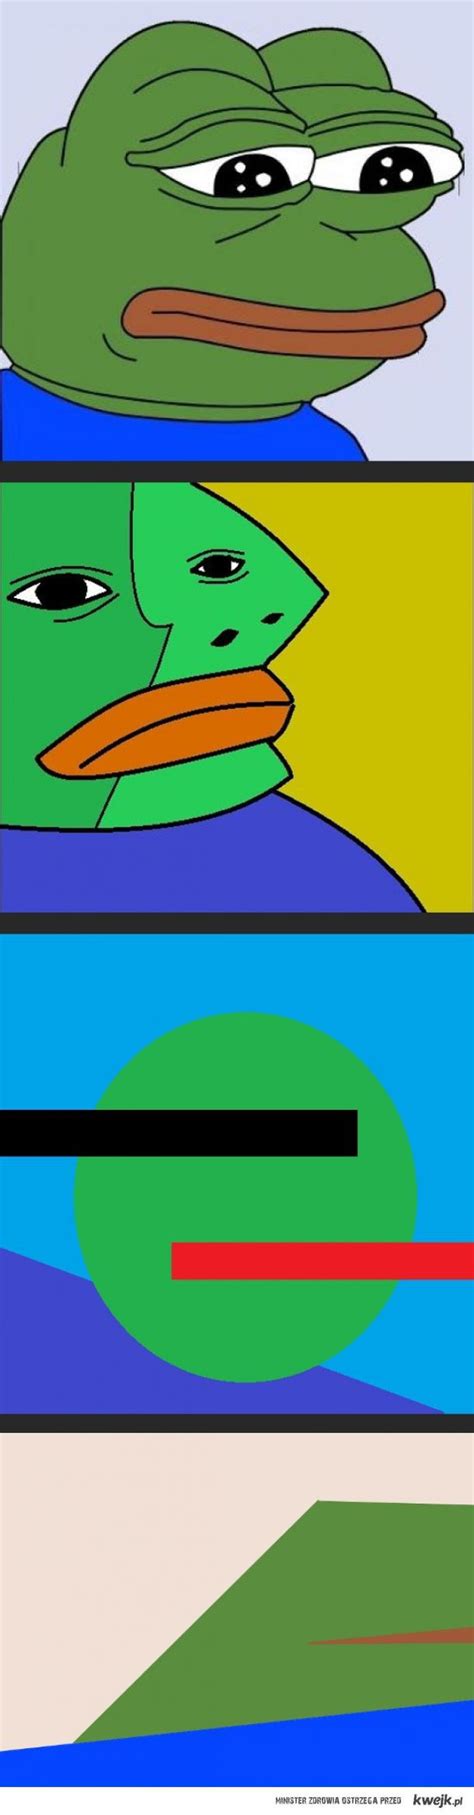 Smutna żaba Art Ministerstwo śmiesznych Obrazków Kwejkpl